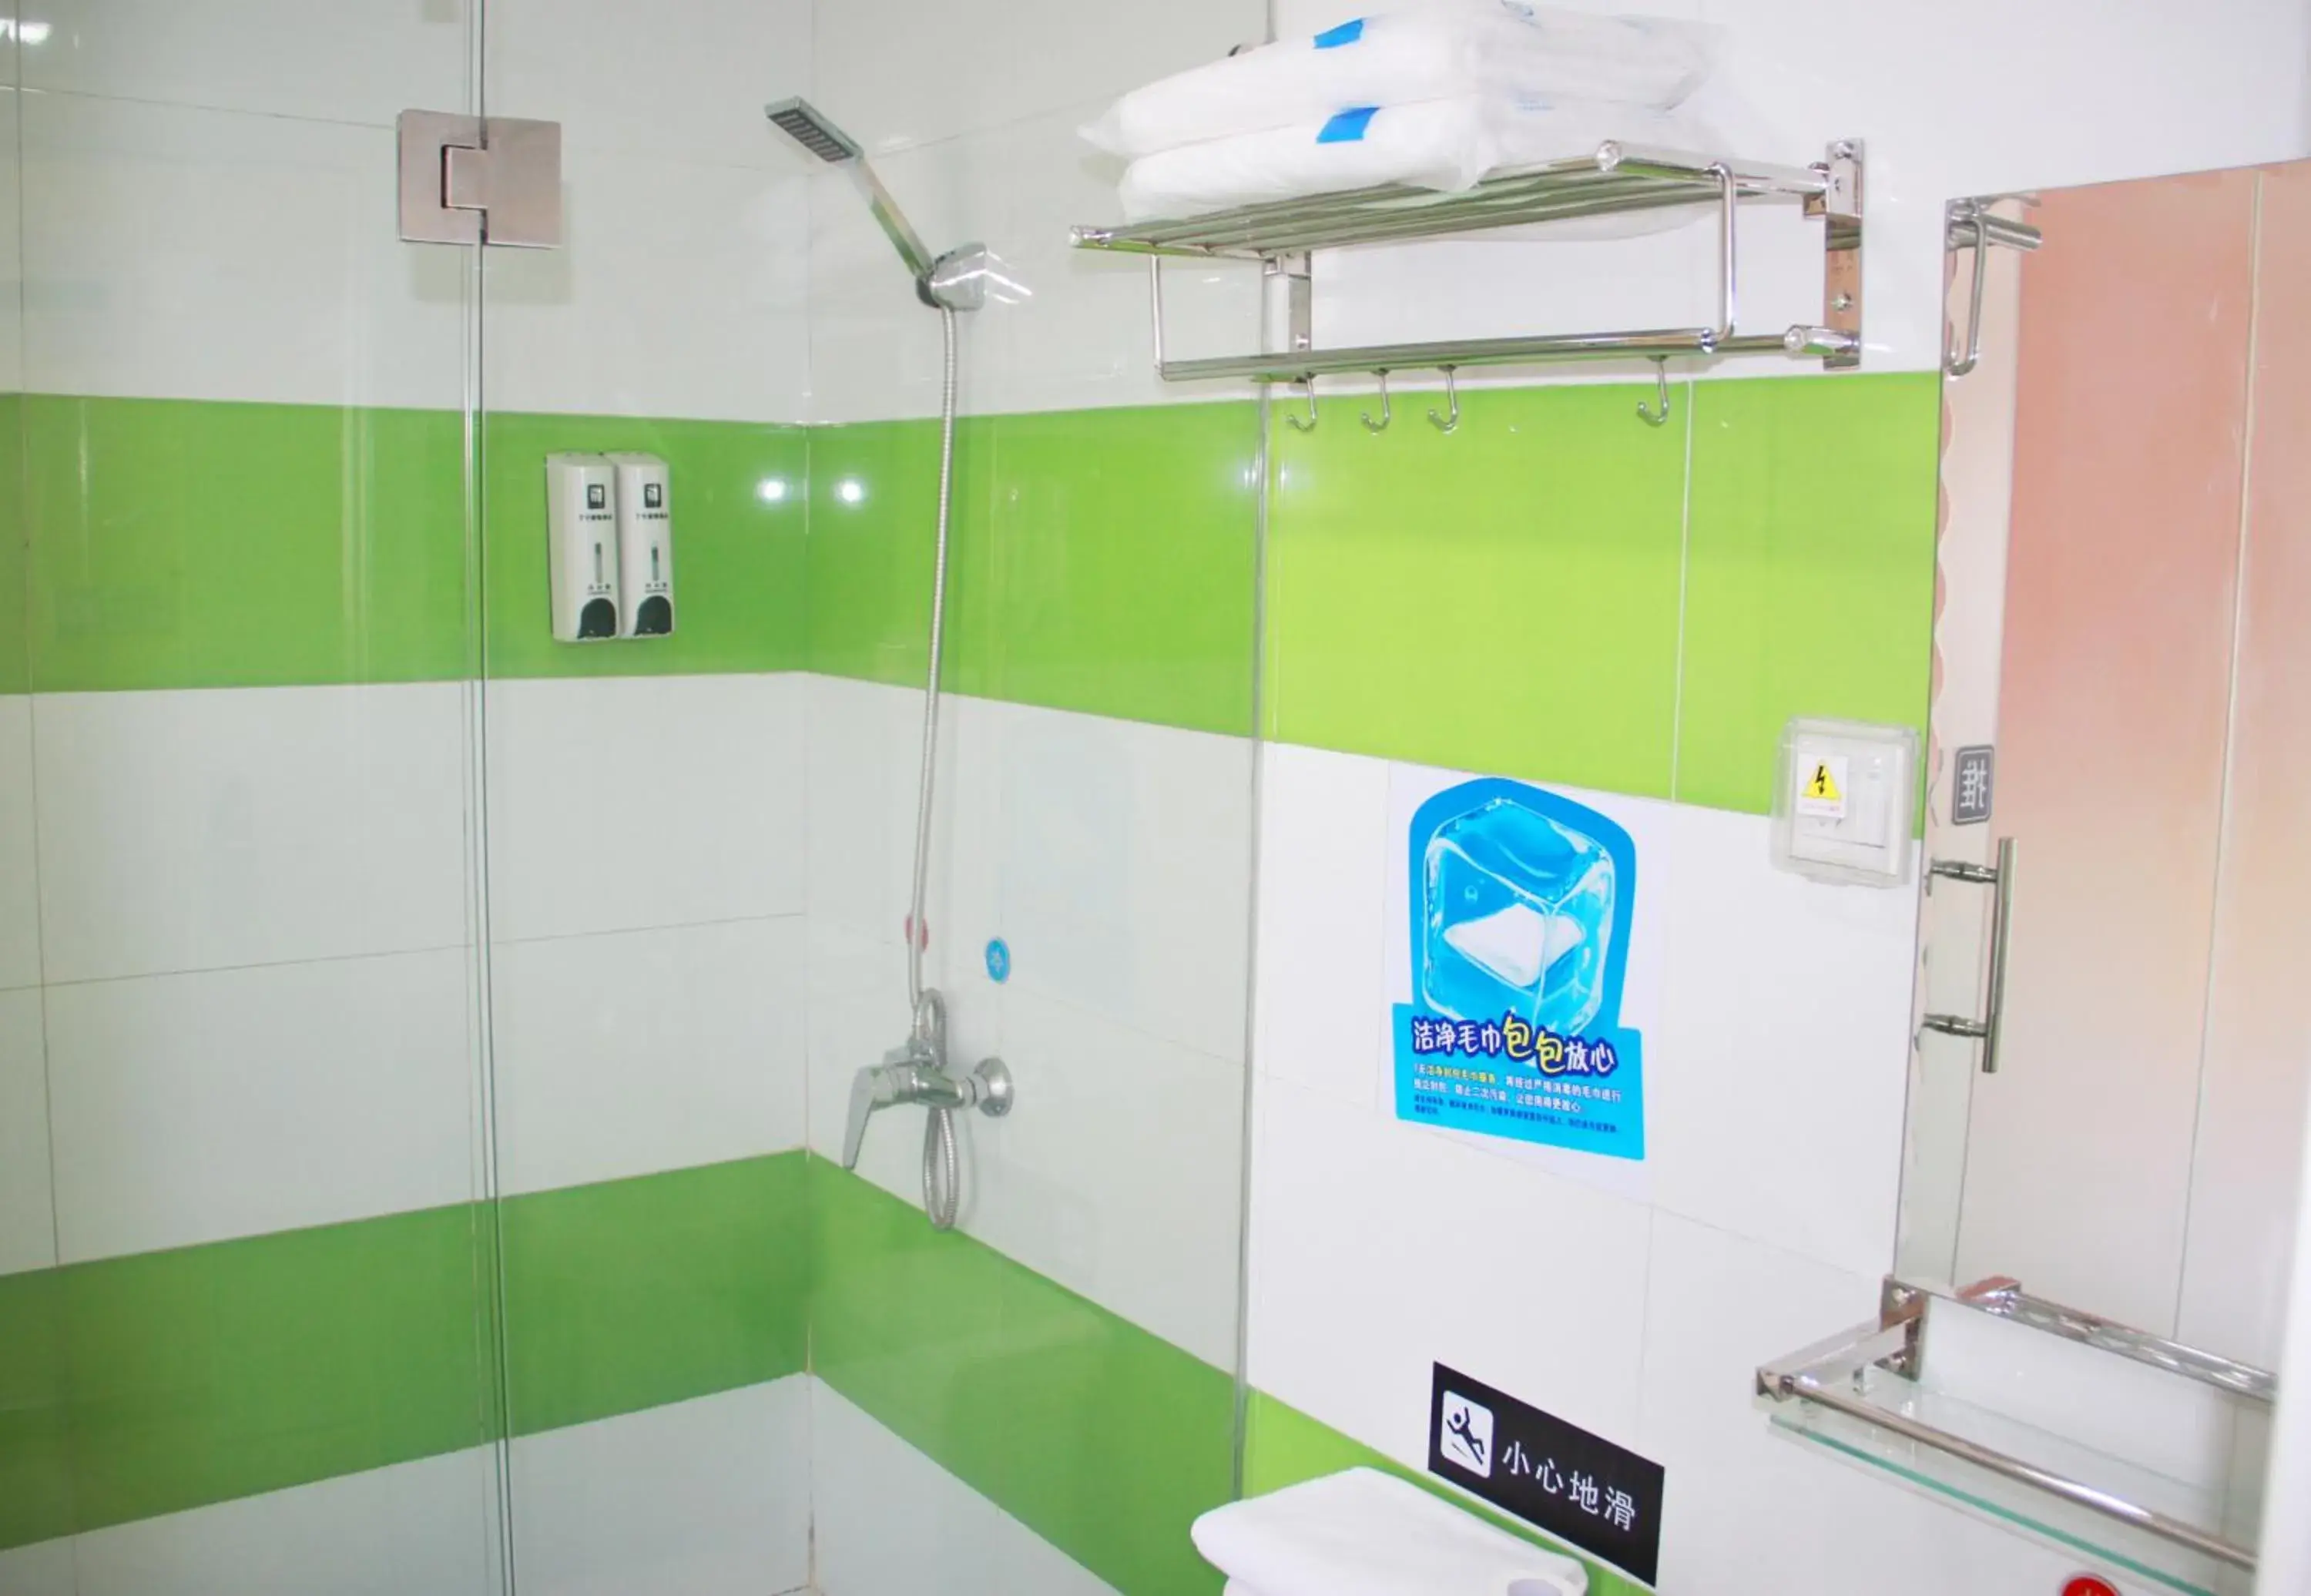 Bathroom in 7 Days Inn Guangzhou Zhongshan 1st Overpass Branch